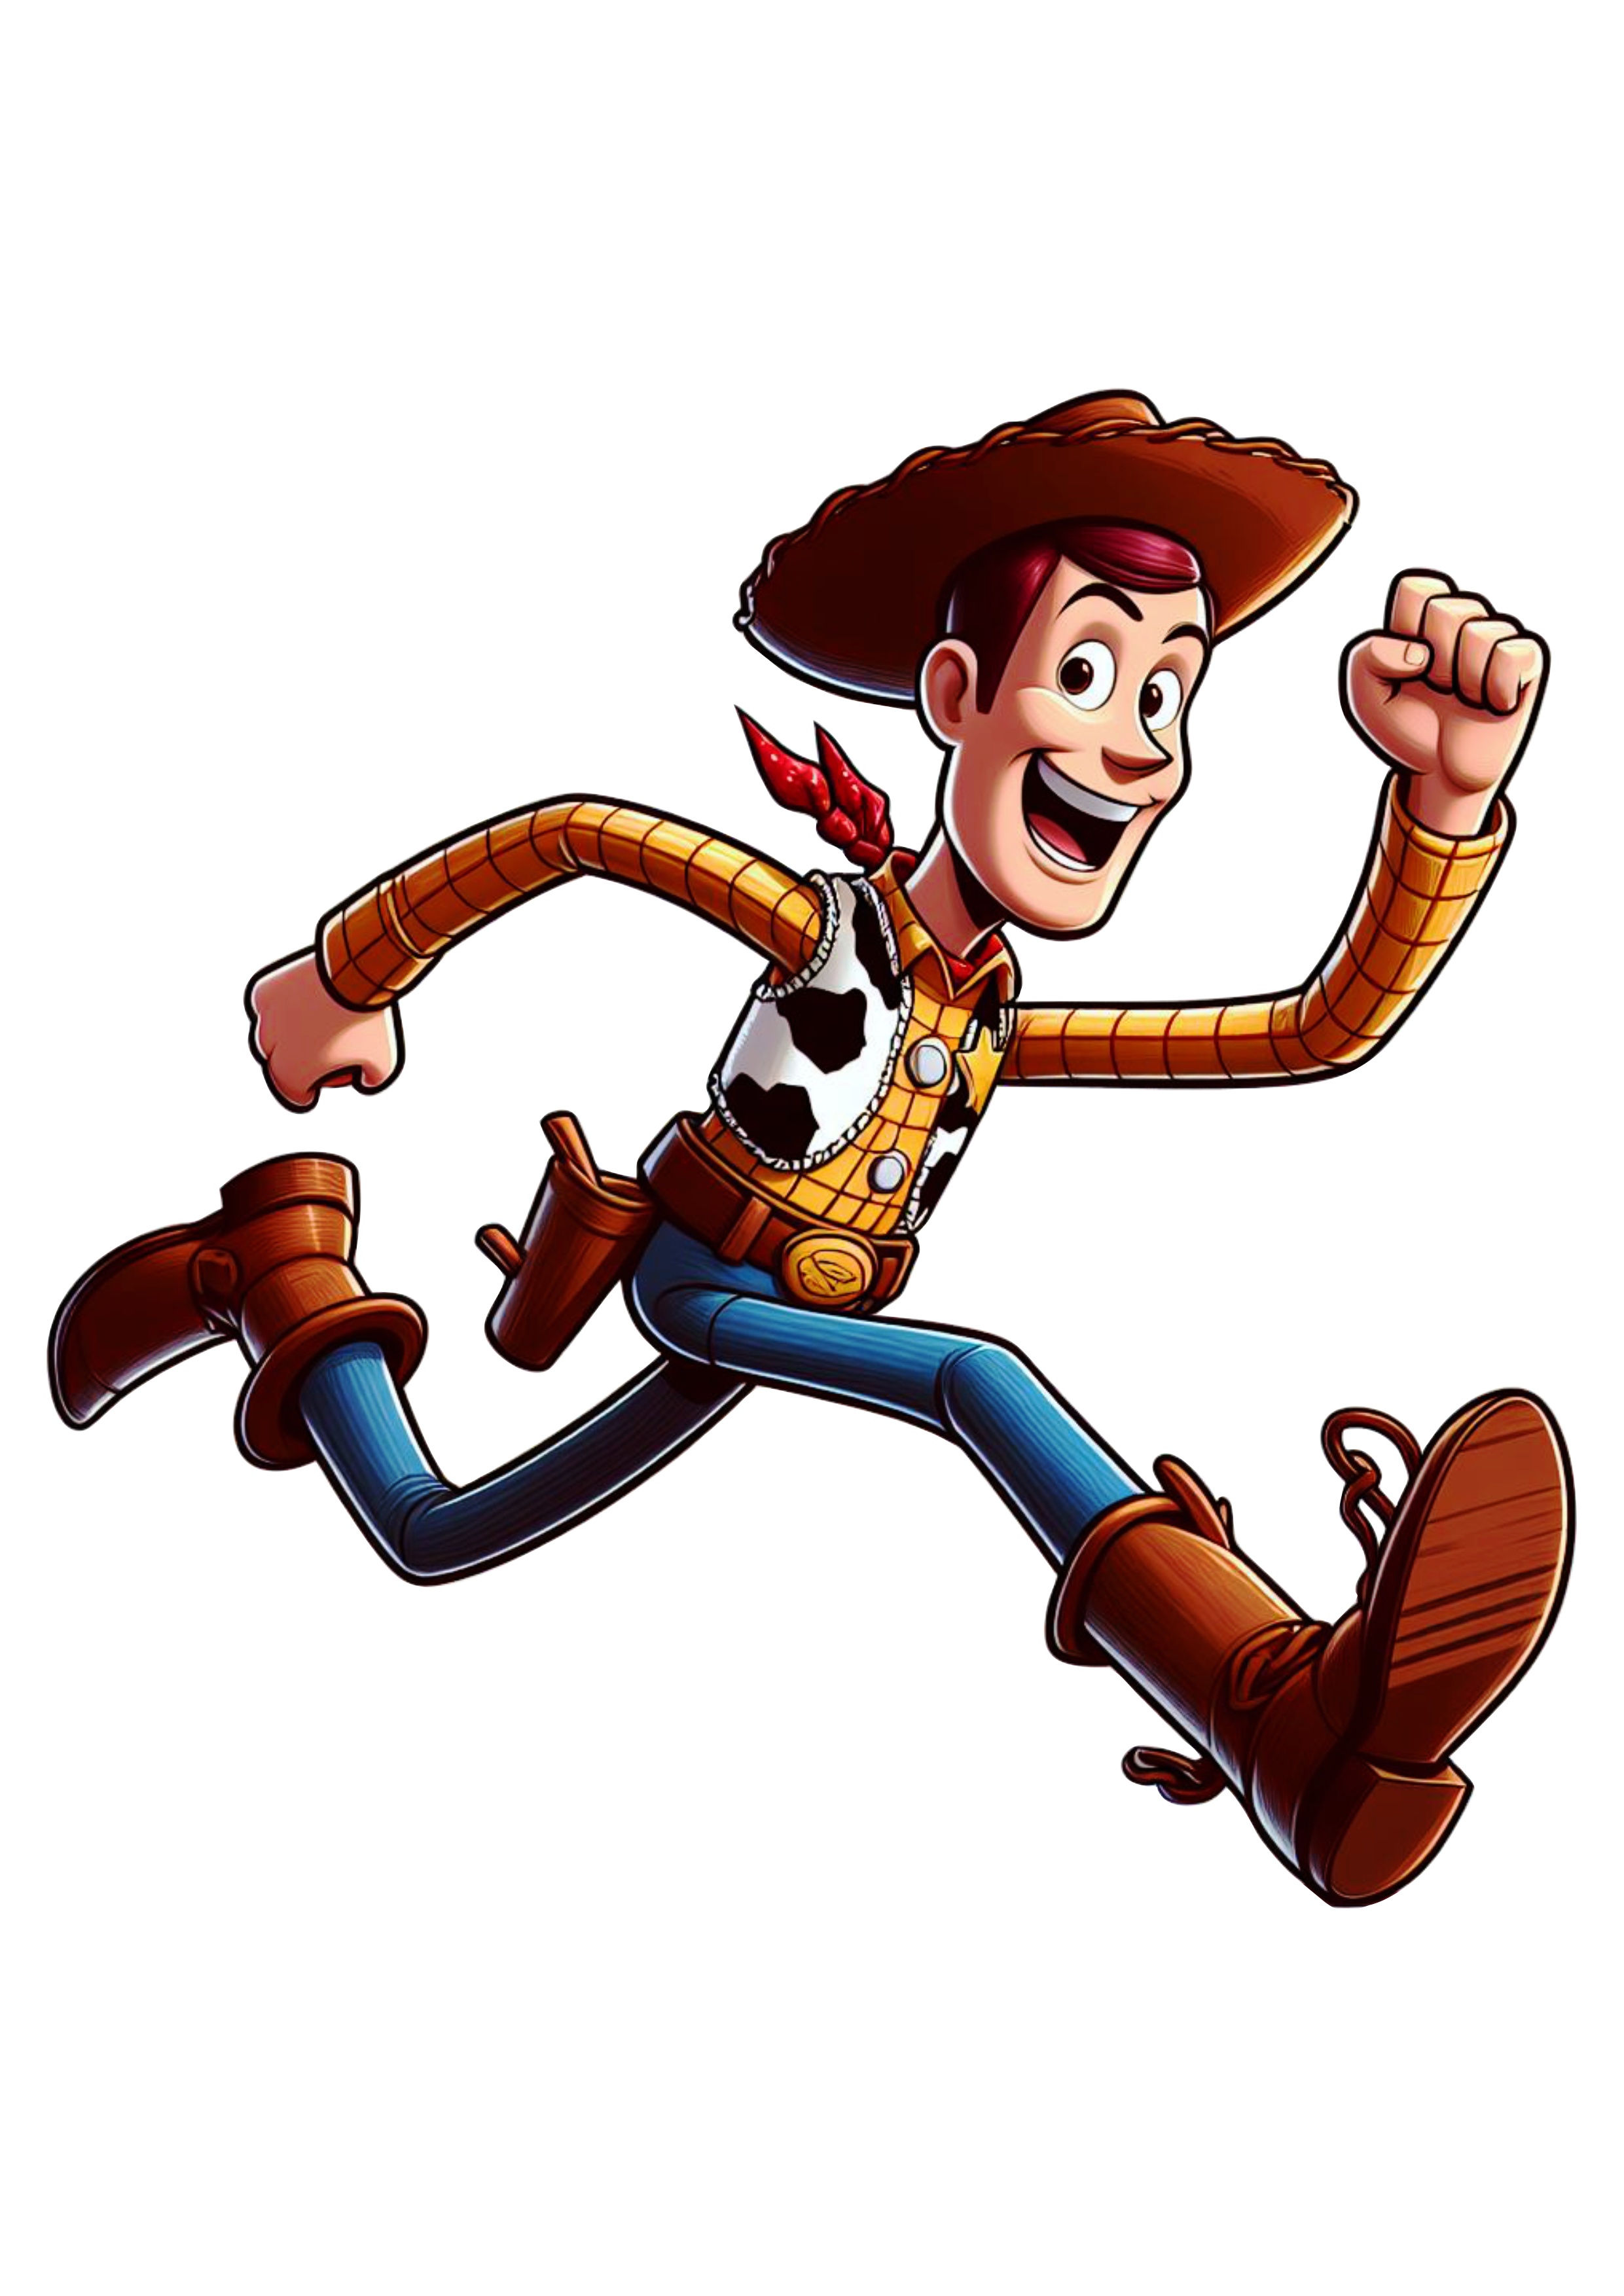 Xerife Woody personagem toy story fundo transparente png clipart vetor ilustração